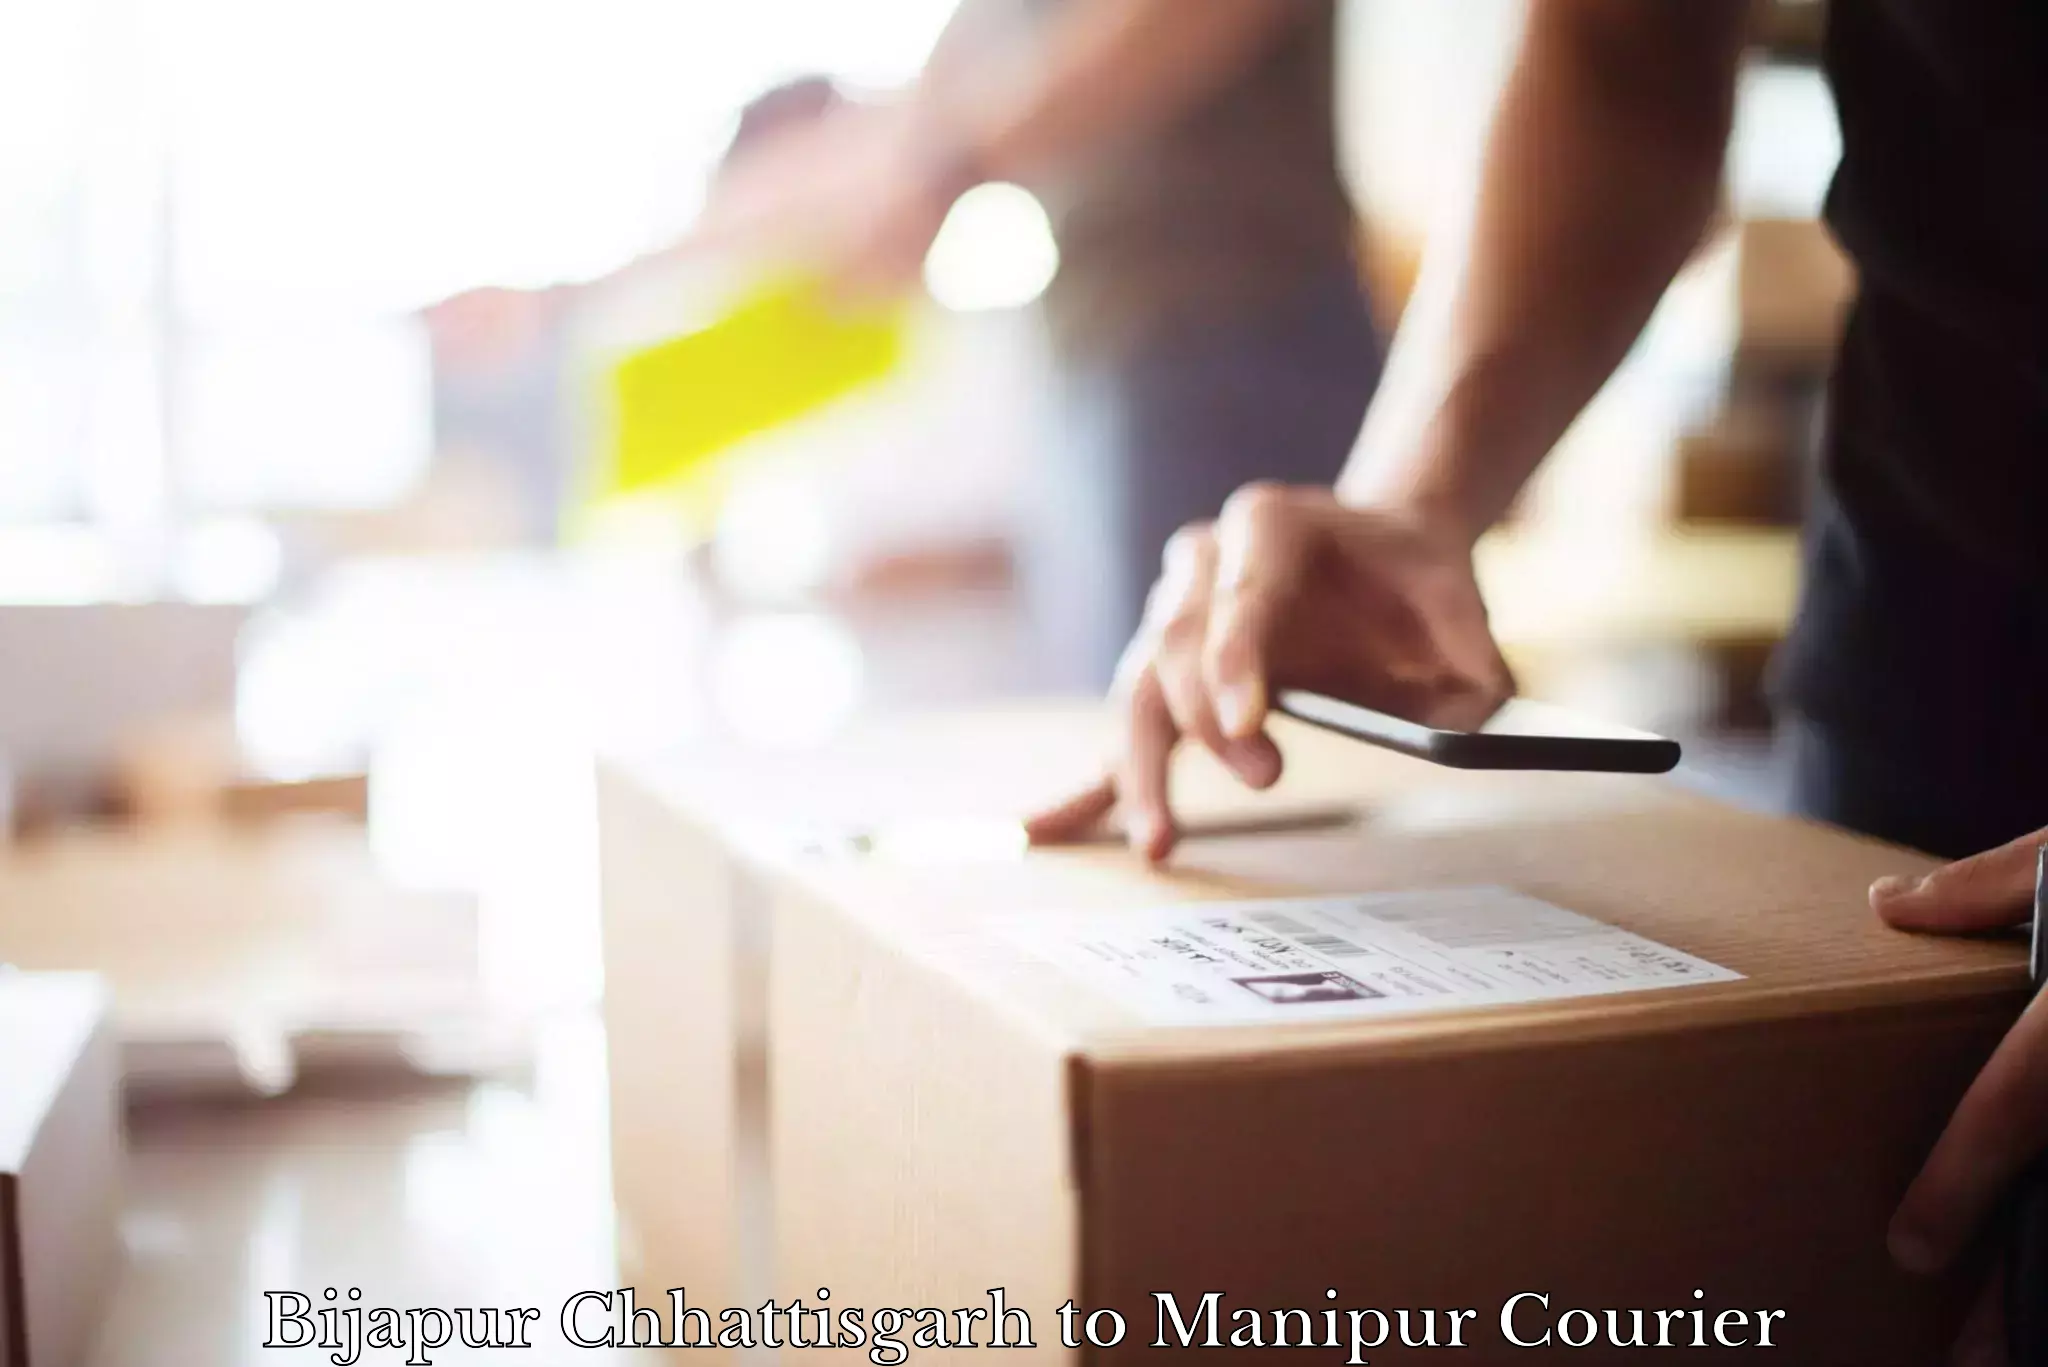 Local delivery service Bijapur Chhattisgarh to Moirang